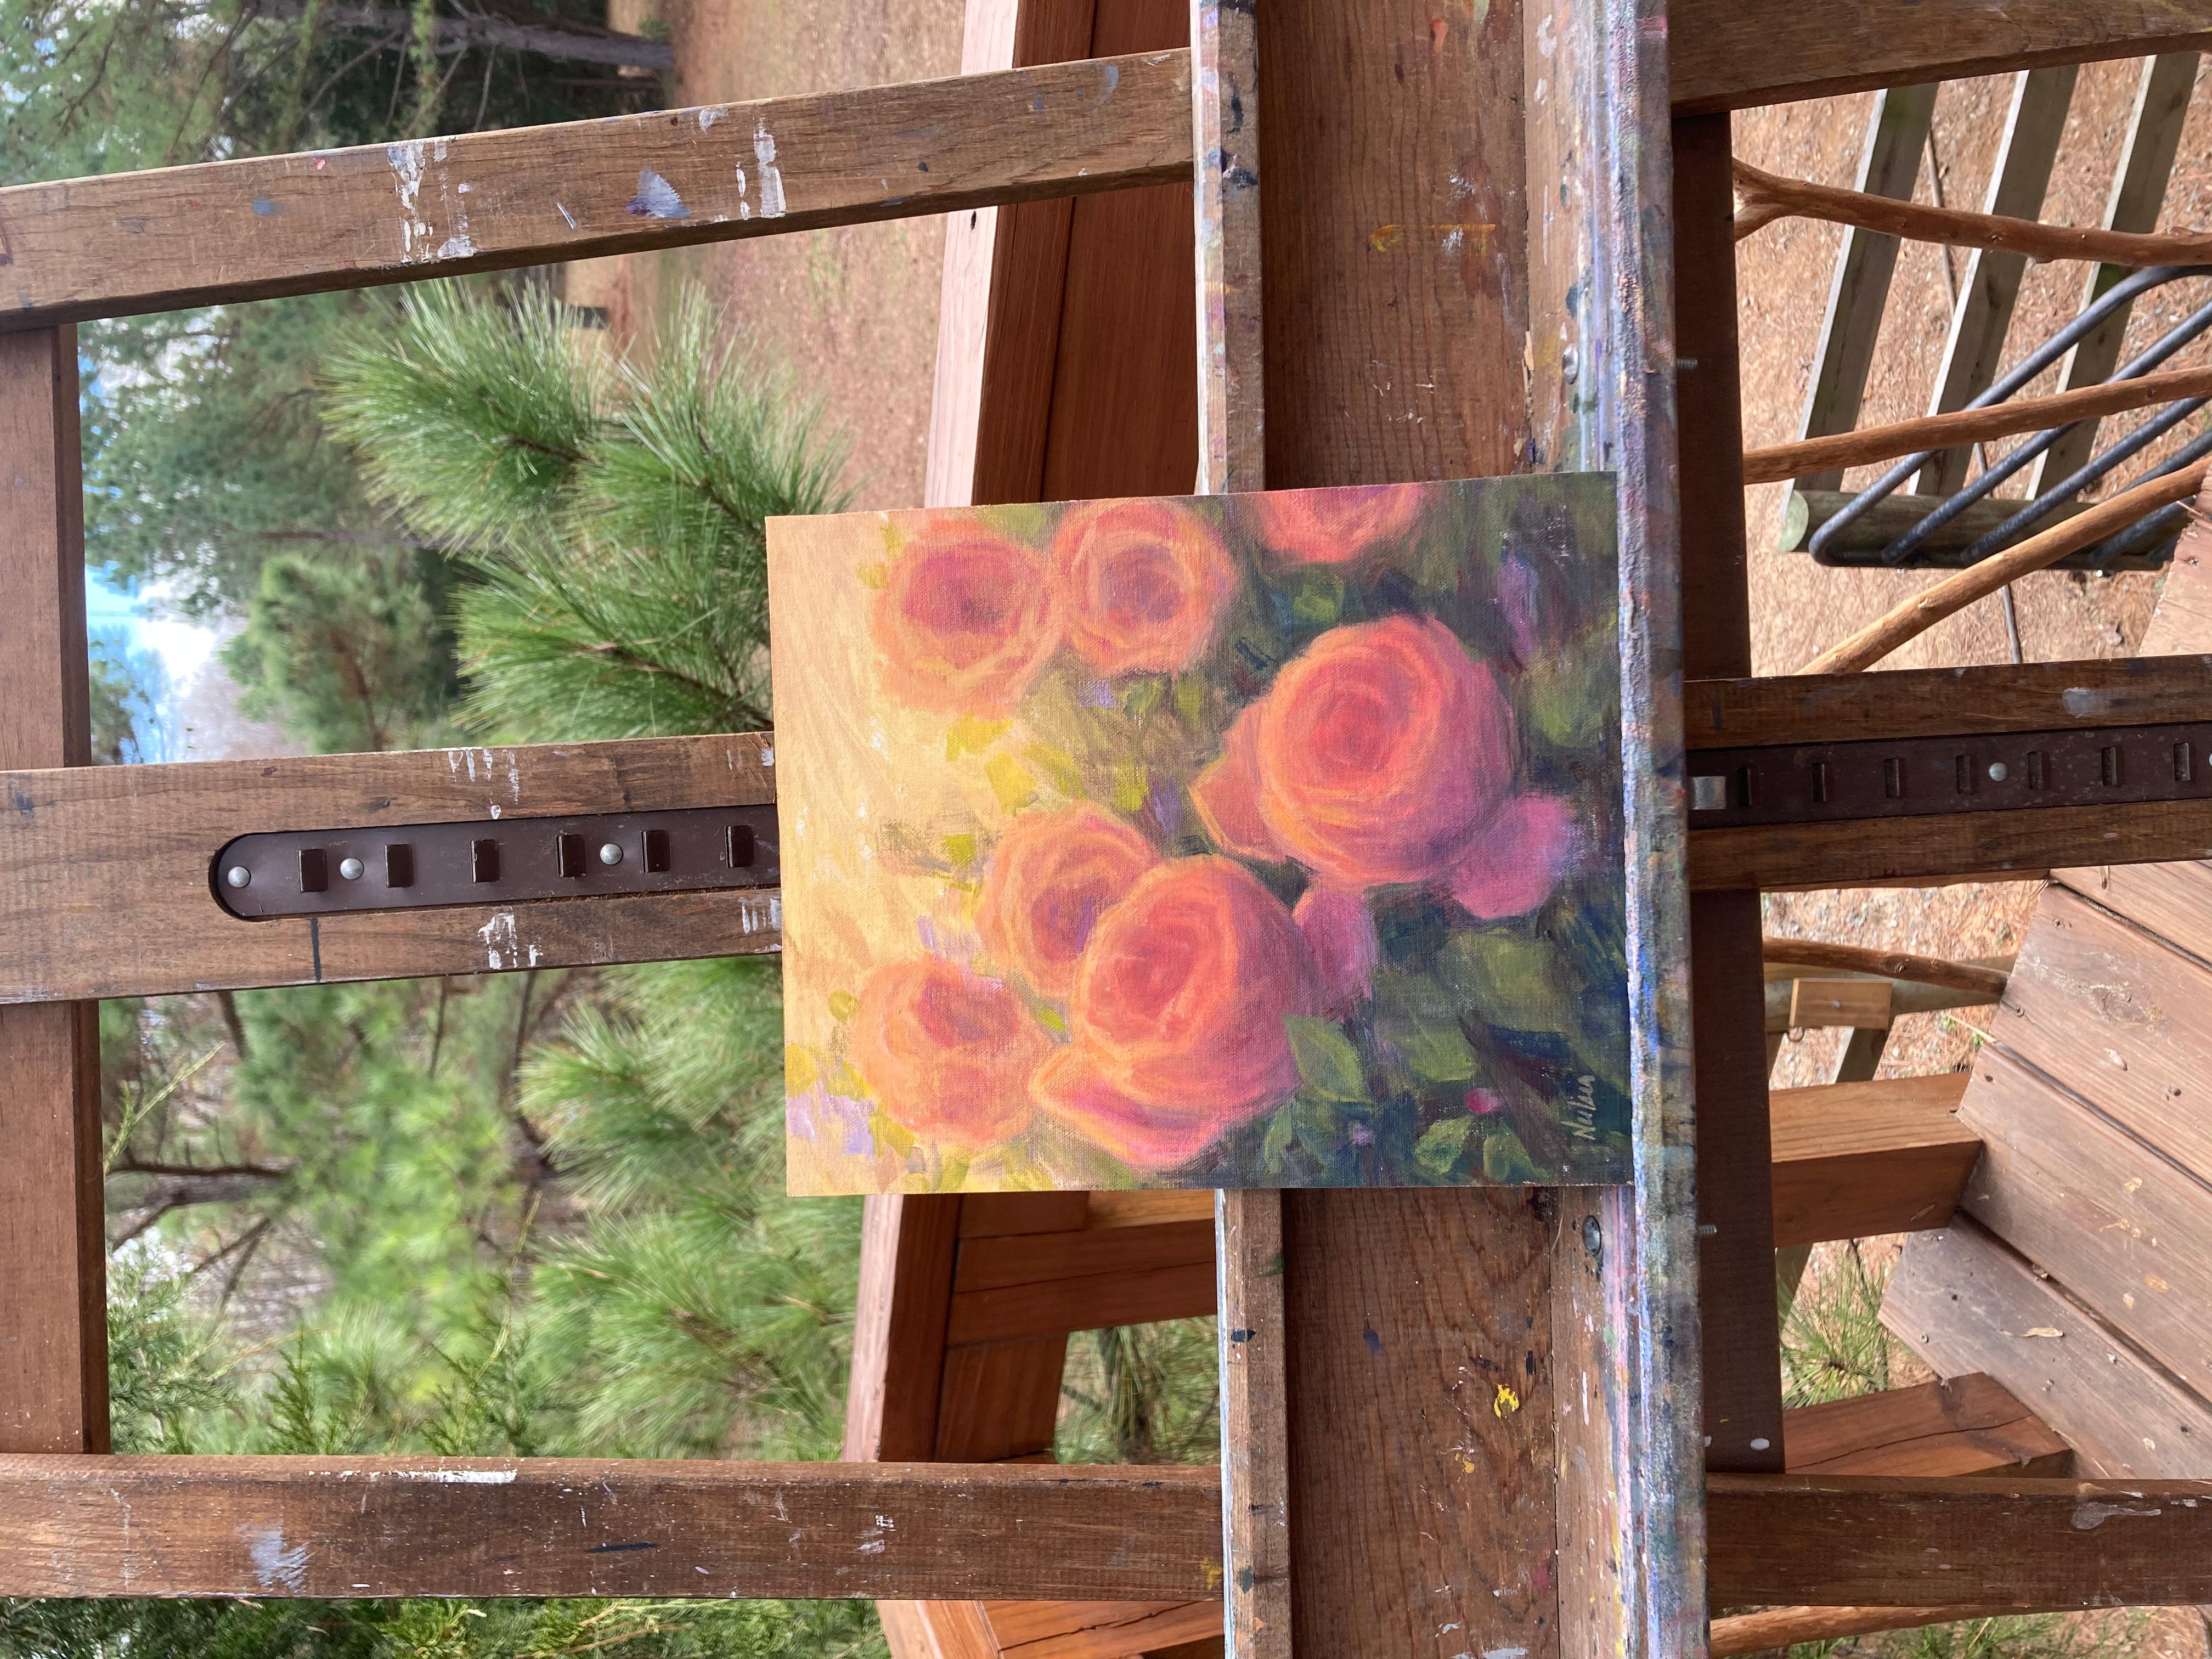 <p>Commentaires de l'artiste<br>L'artiste Lisa Nielsen présente des roses impressionnistes qui brillent sous la chaleur du soleil. Des fleurs dodues jaillissent des arbustes effervescents du jardin rayonnant. La composition florale attire le